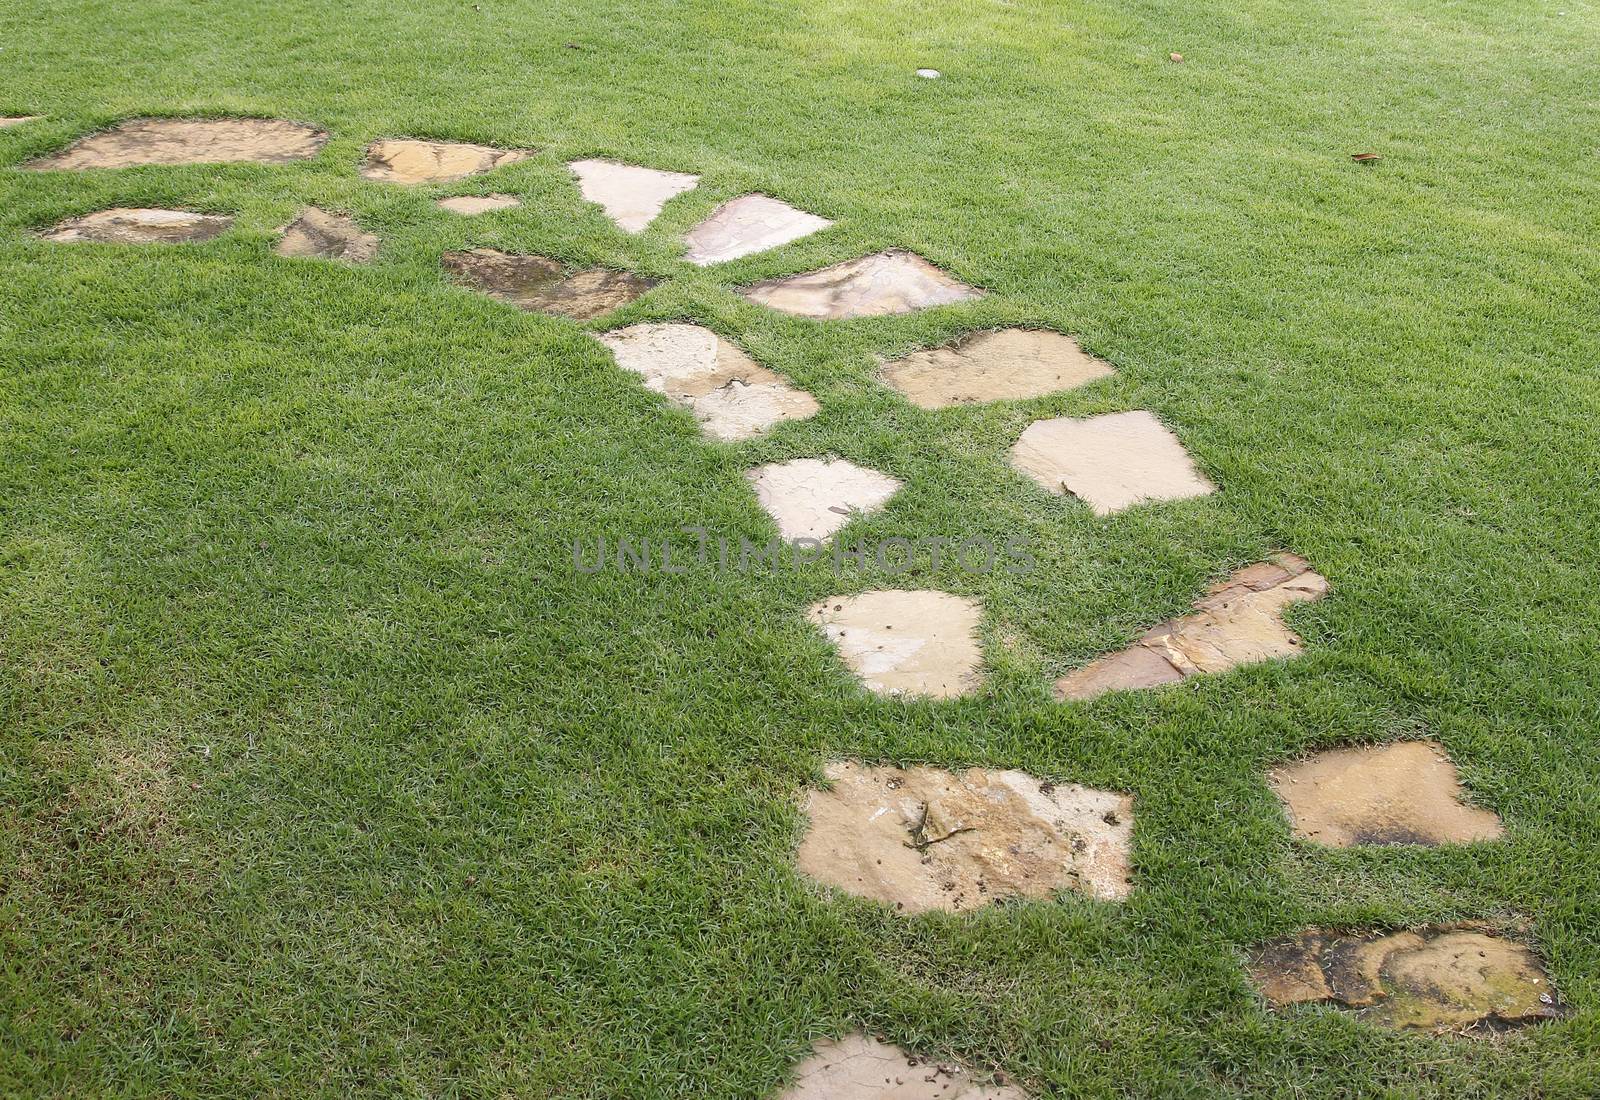 Stone path on green grass in garden 